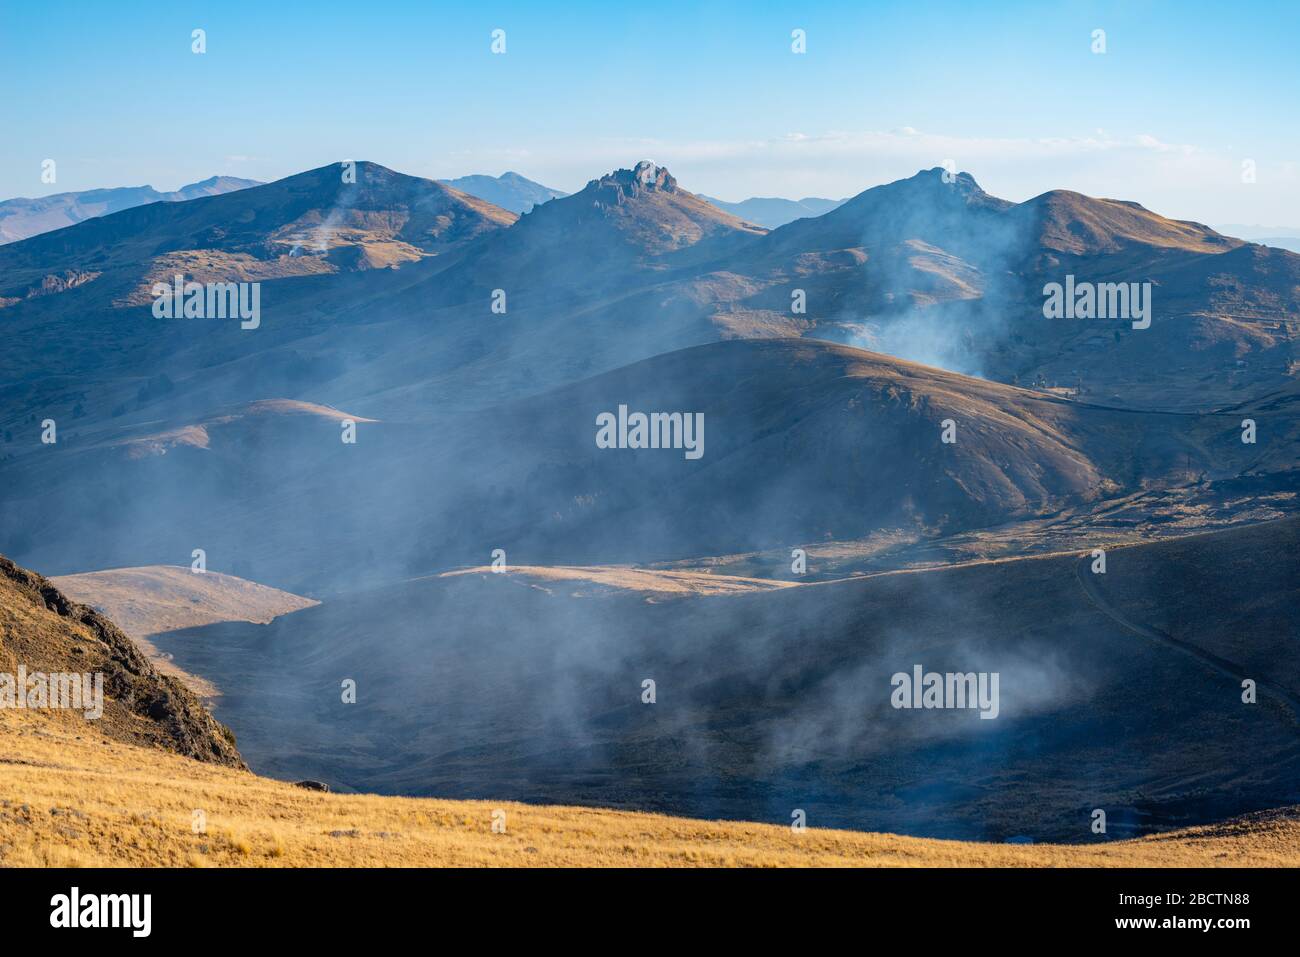 Ländliche Landschaft auf der Halbinsel Copaba auf einer Höhe von rund 4.000 m, Departement La Paz, Bolivien, Lateinamerika Stockfoto